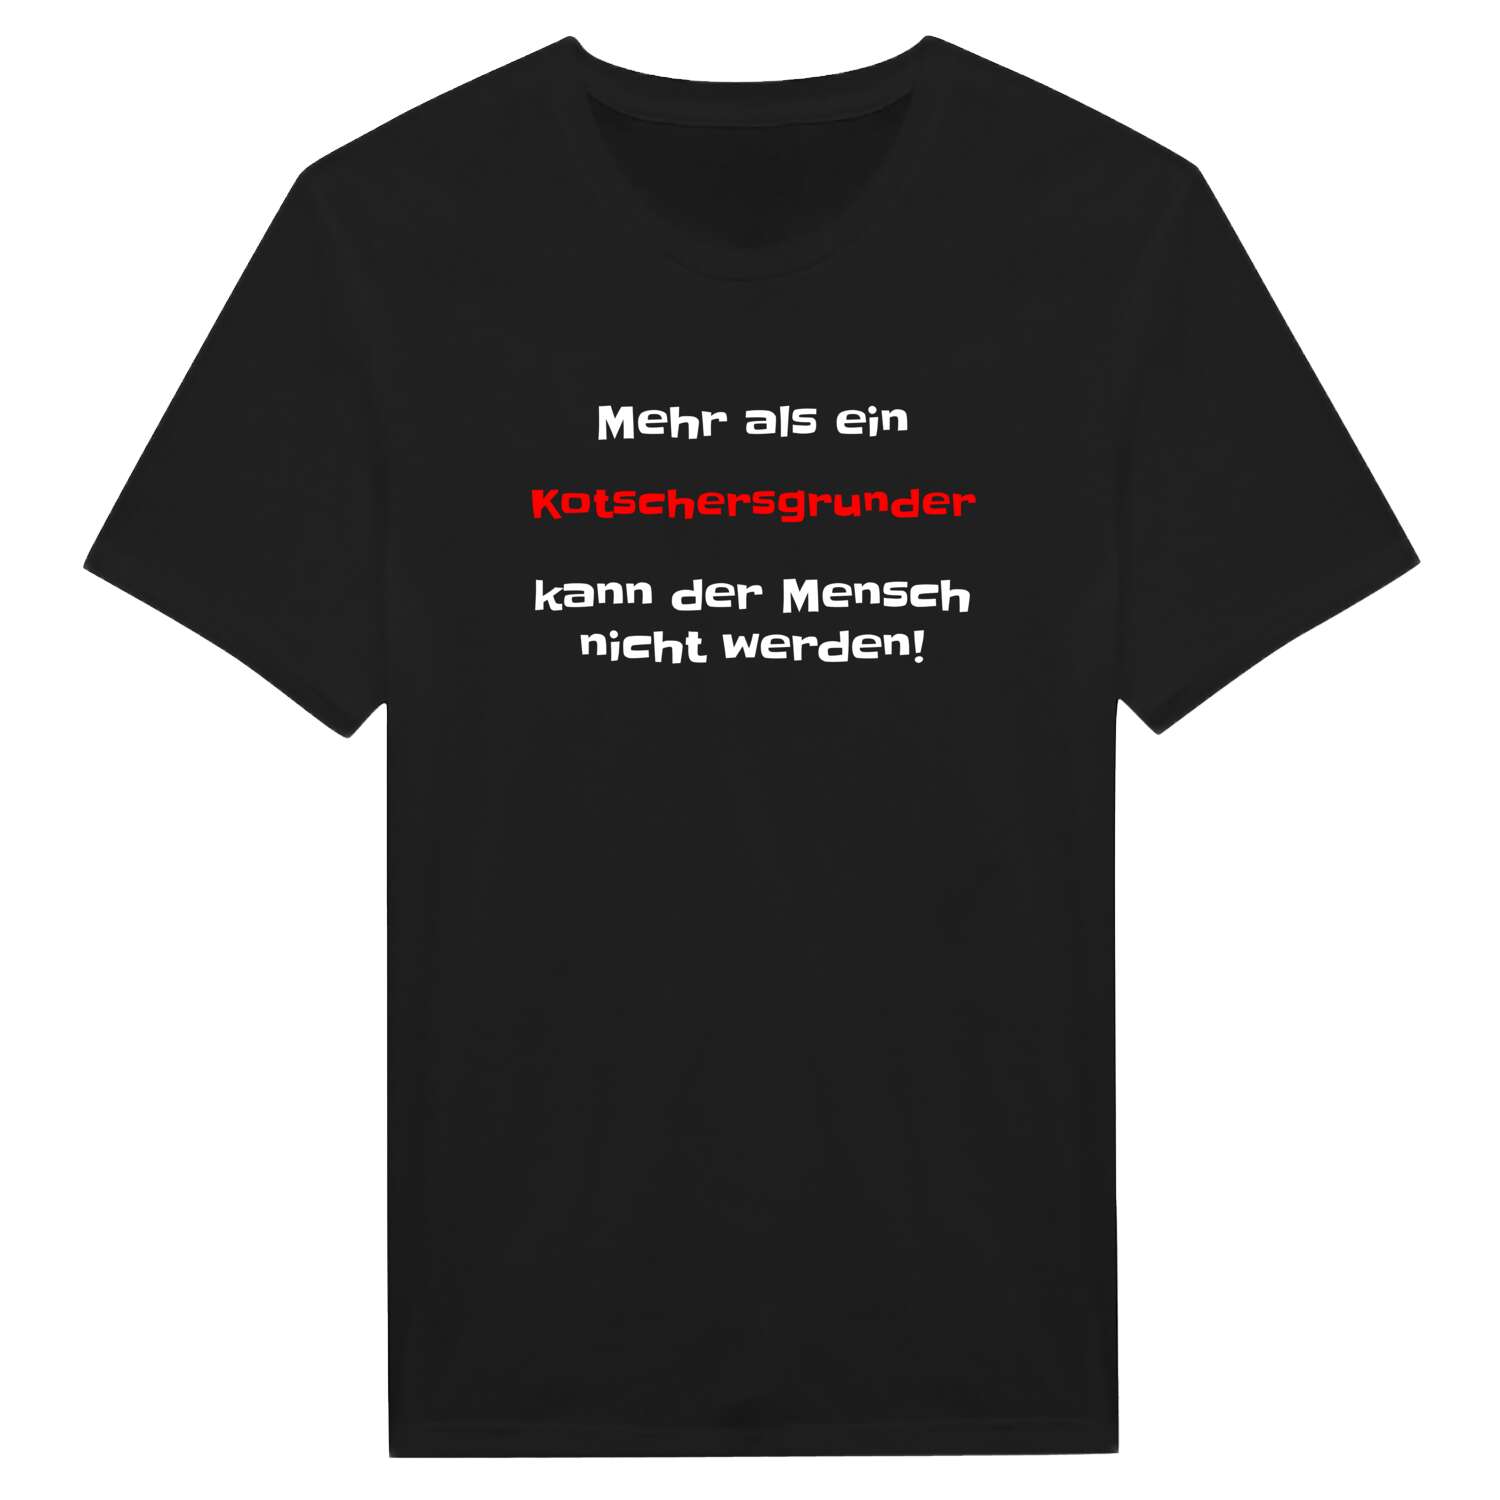 Kotschersgrund T-Shirt »Mehr als ein«